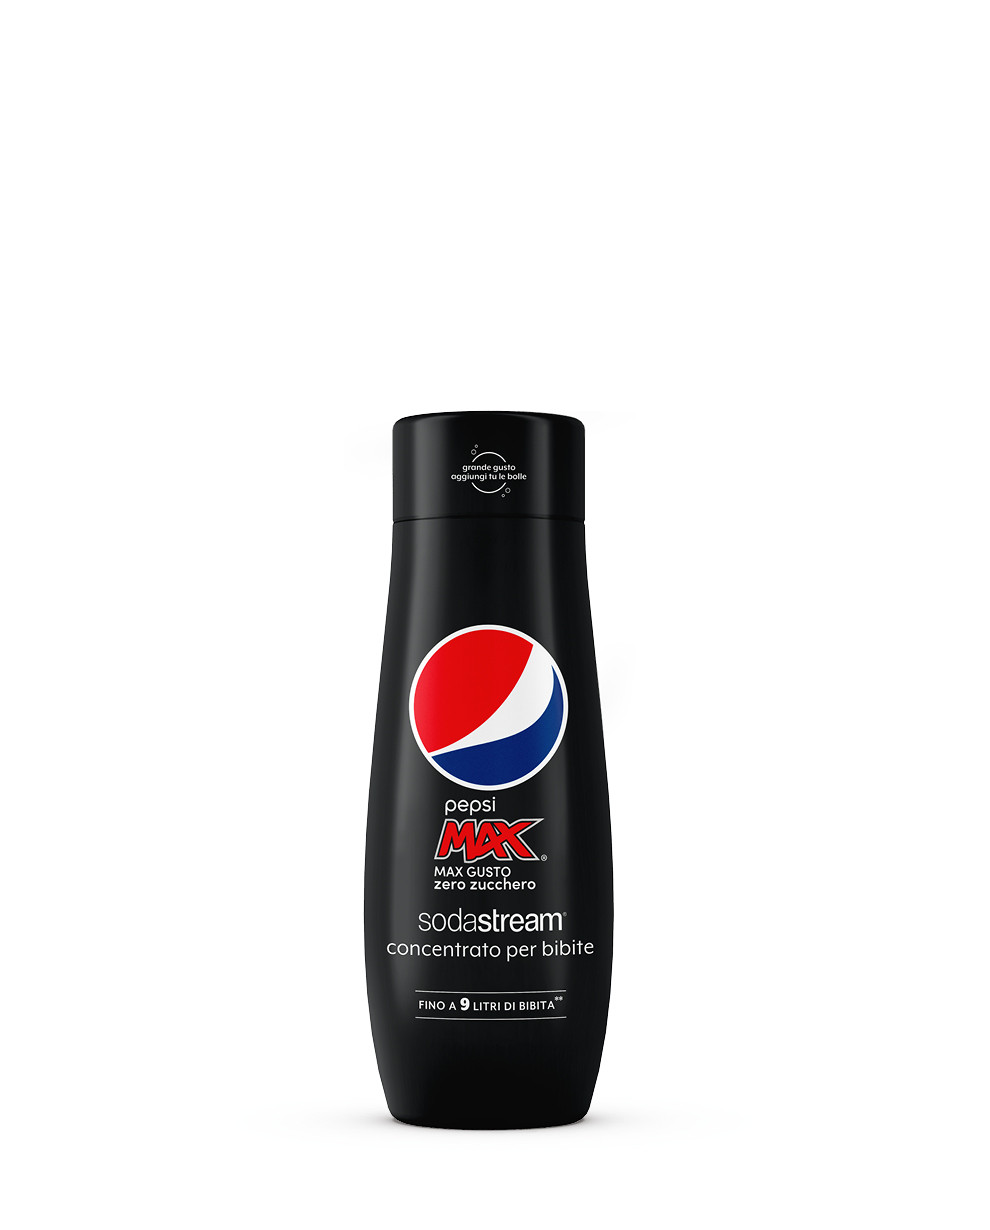 Concentrato gusto Pepsi Max senza zucchero per Gasatori